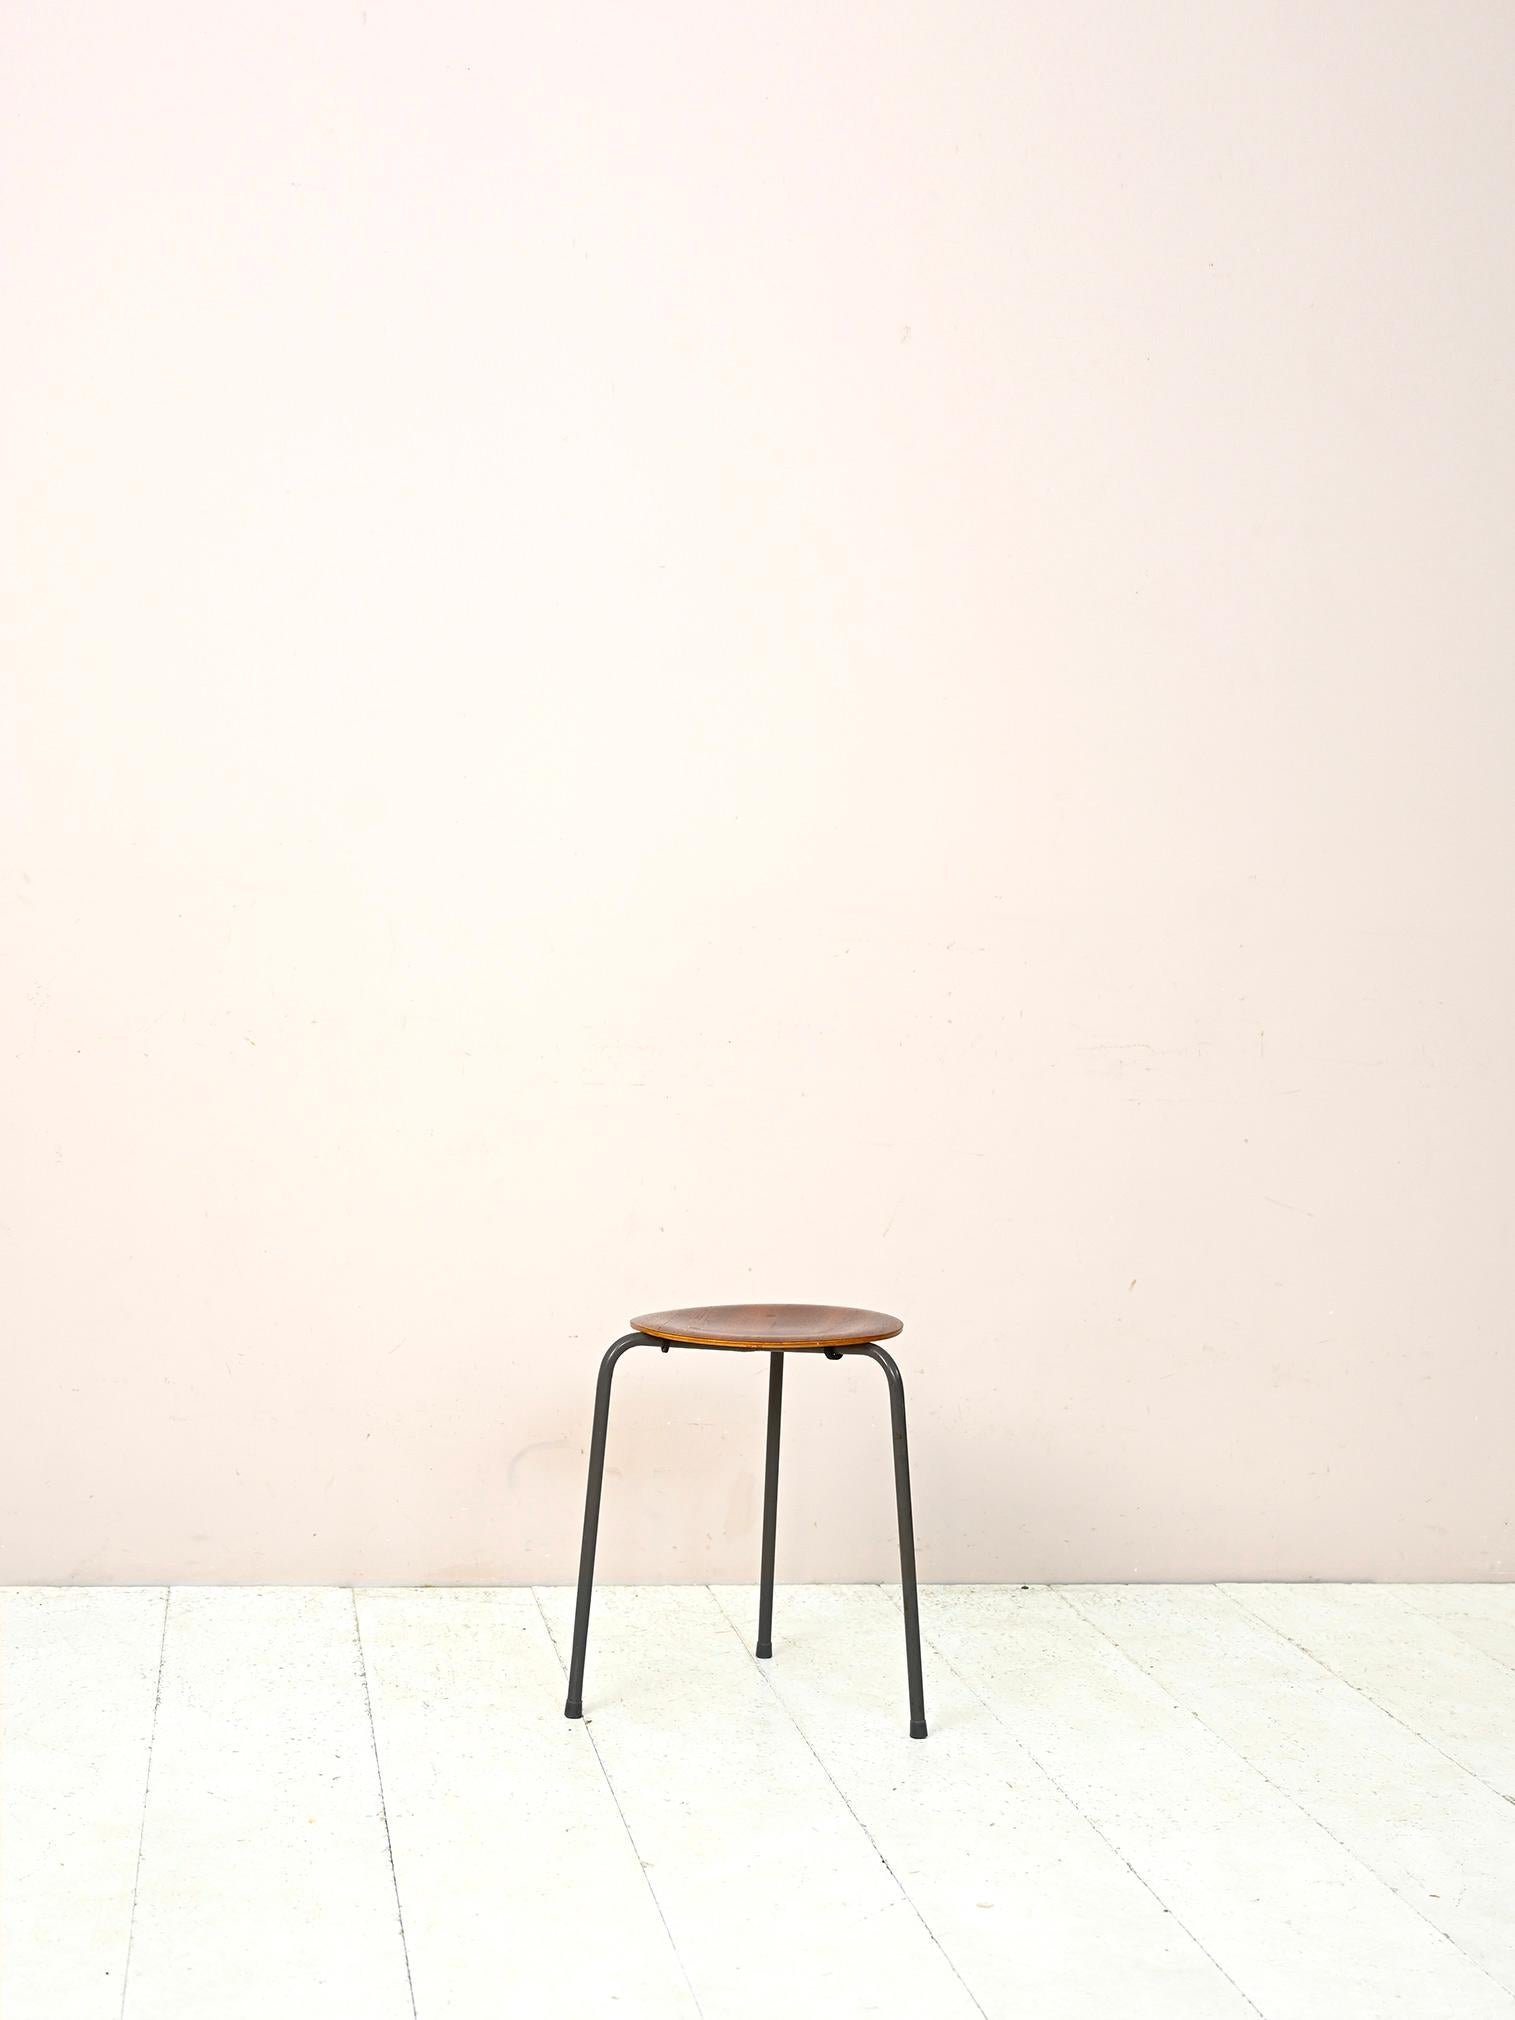 Tabouret des années 1960 d'origine suédoise.

Composé d'une structure en métal tubulaire formant les trois pieds et d'une assise plaquée en teck. 
S'utilise aussi bien comme siège que comme table d'appoint ou comme support pour une plante.

Bon